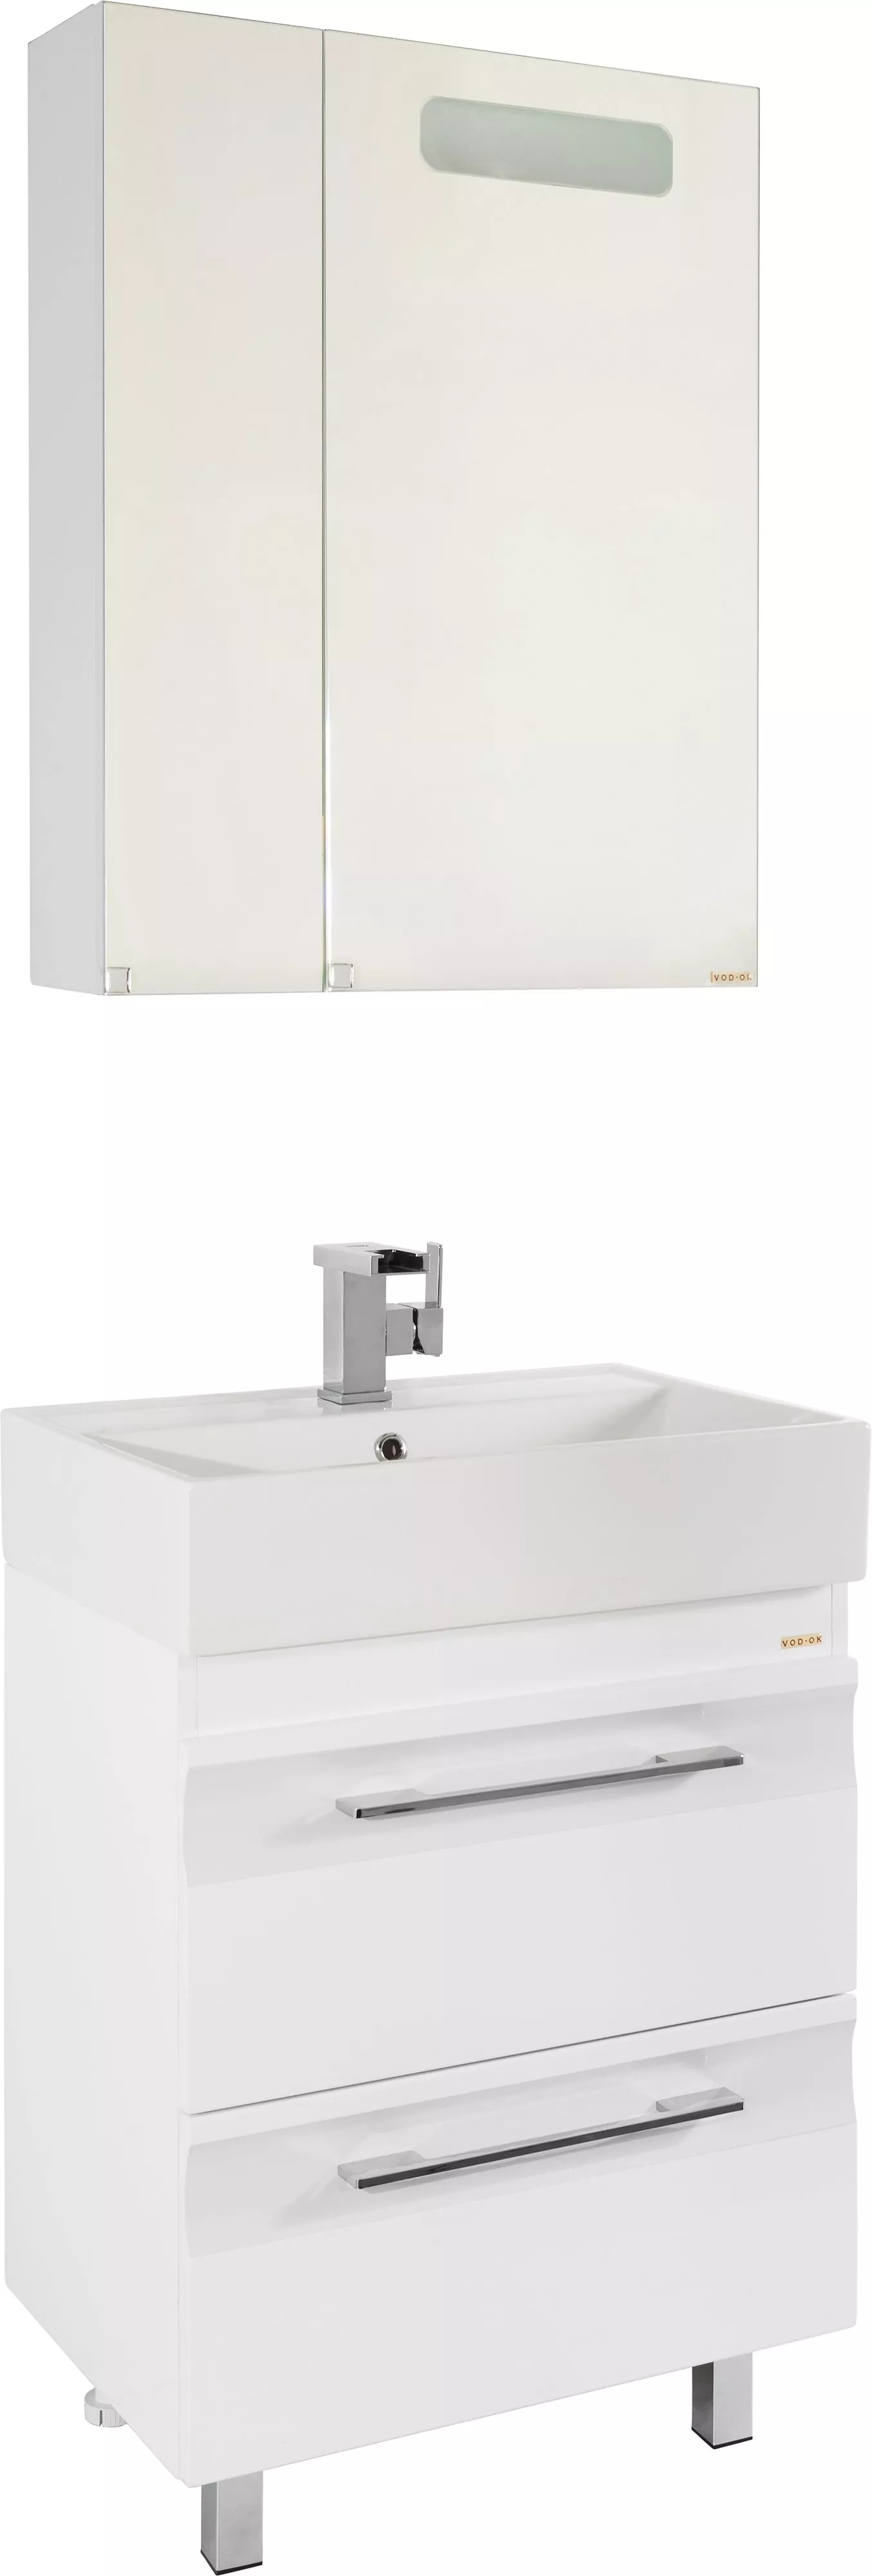 Мебель для ванной Vod-Ok Мальта 60 с ящиками, белая, размер 60, цвет белый - фото 1